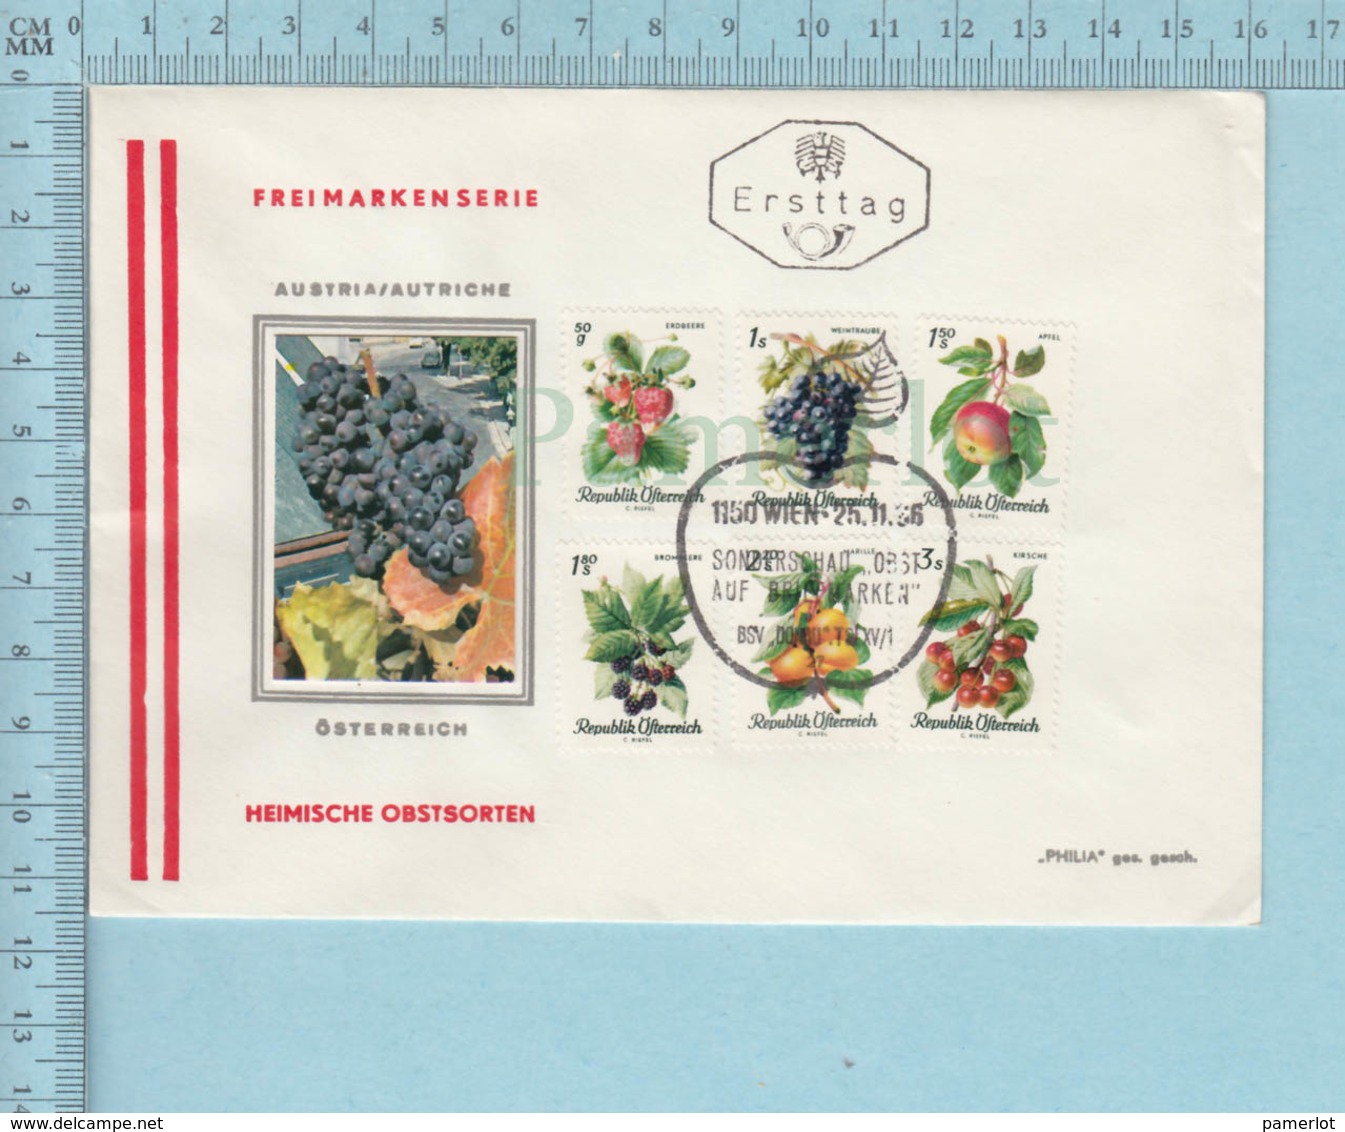 Autriche , Austria - Flame Cachet: Heimische Obstsorten, 6 Stamps 1966, Frei Marken Serie - FDC